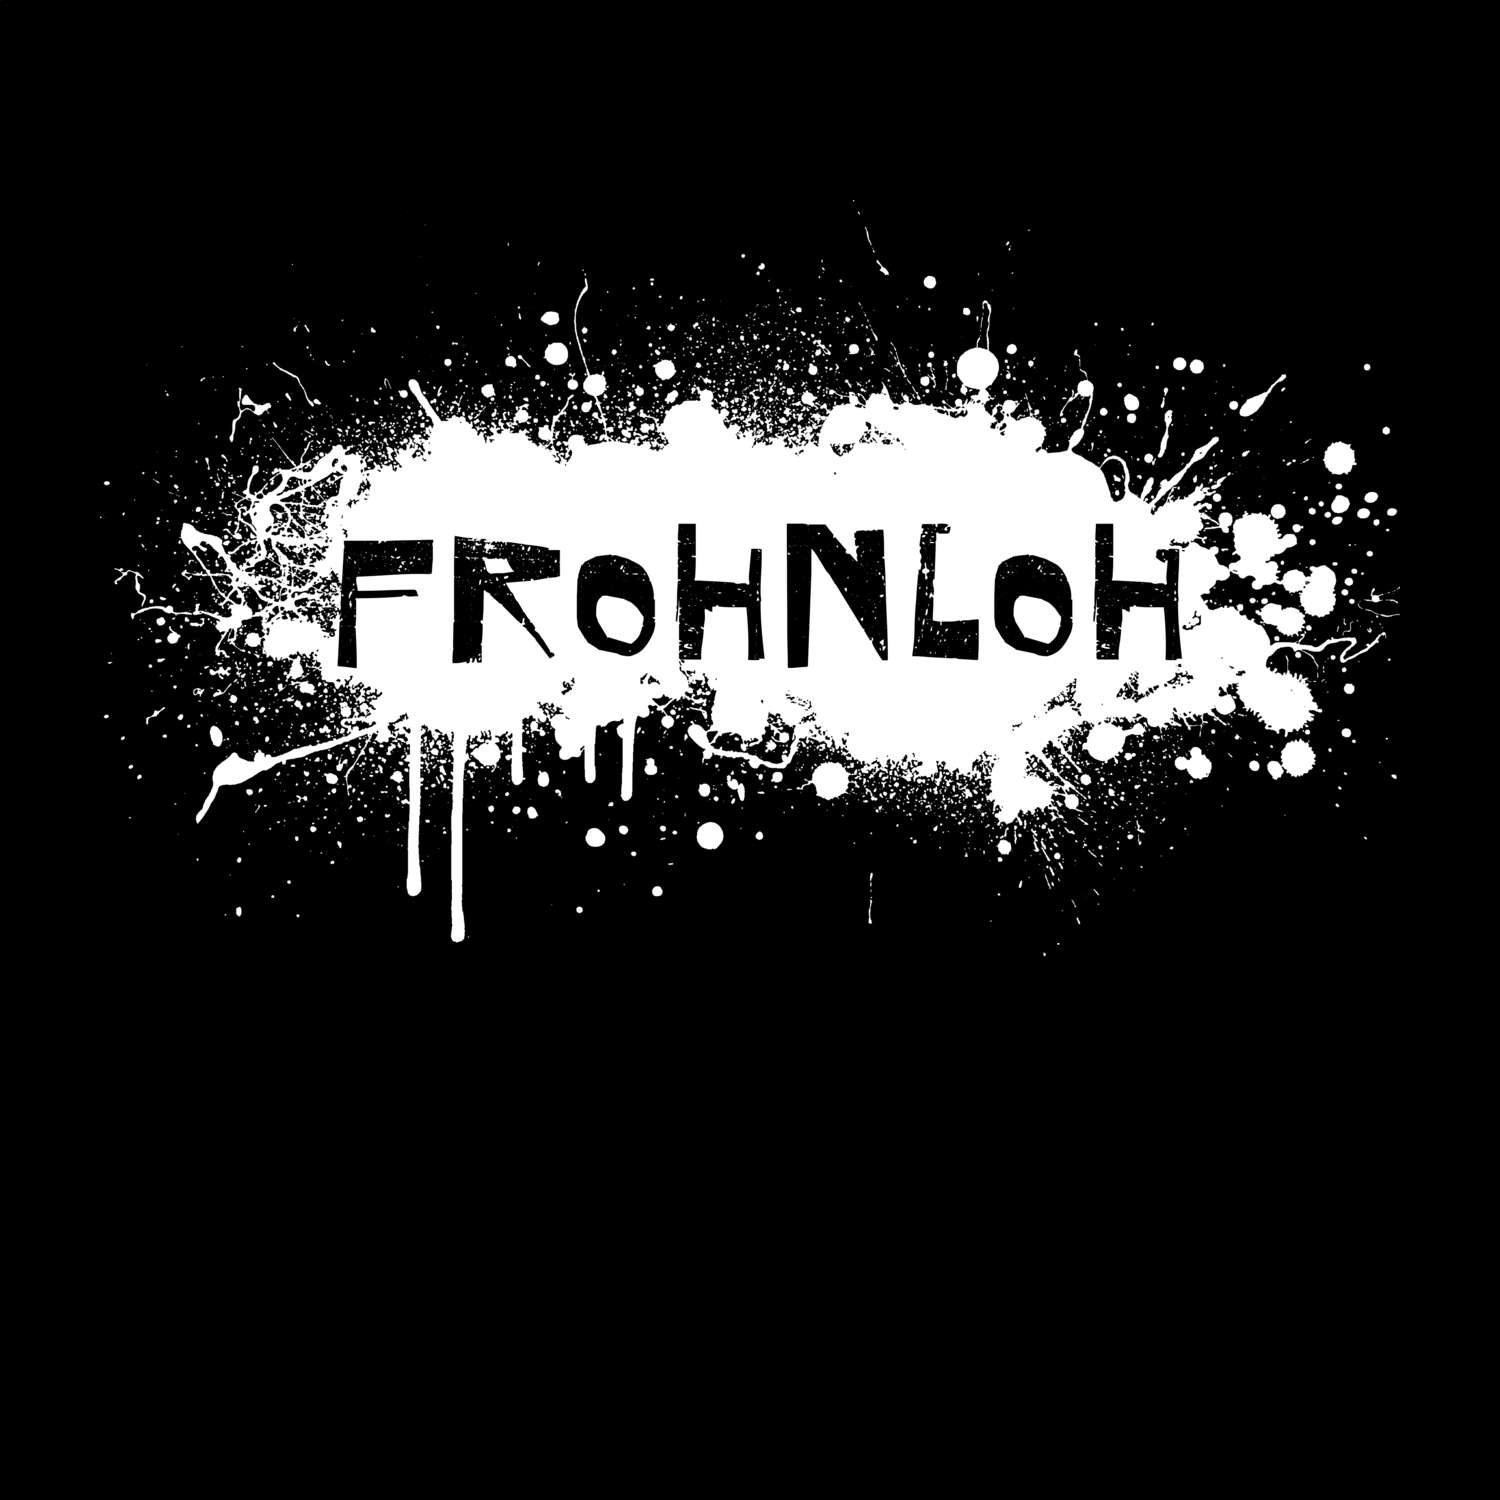 Frohnloh T-Shirt »Paint Splash Punk«